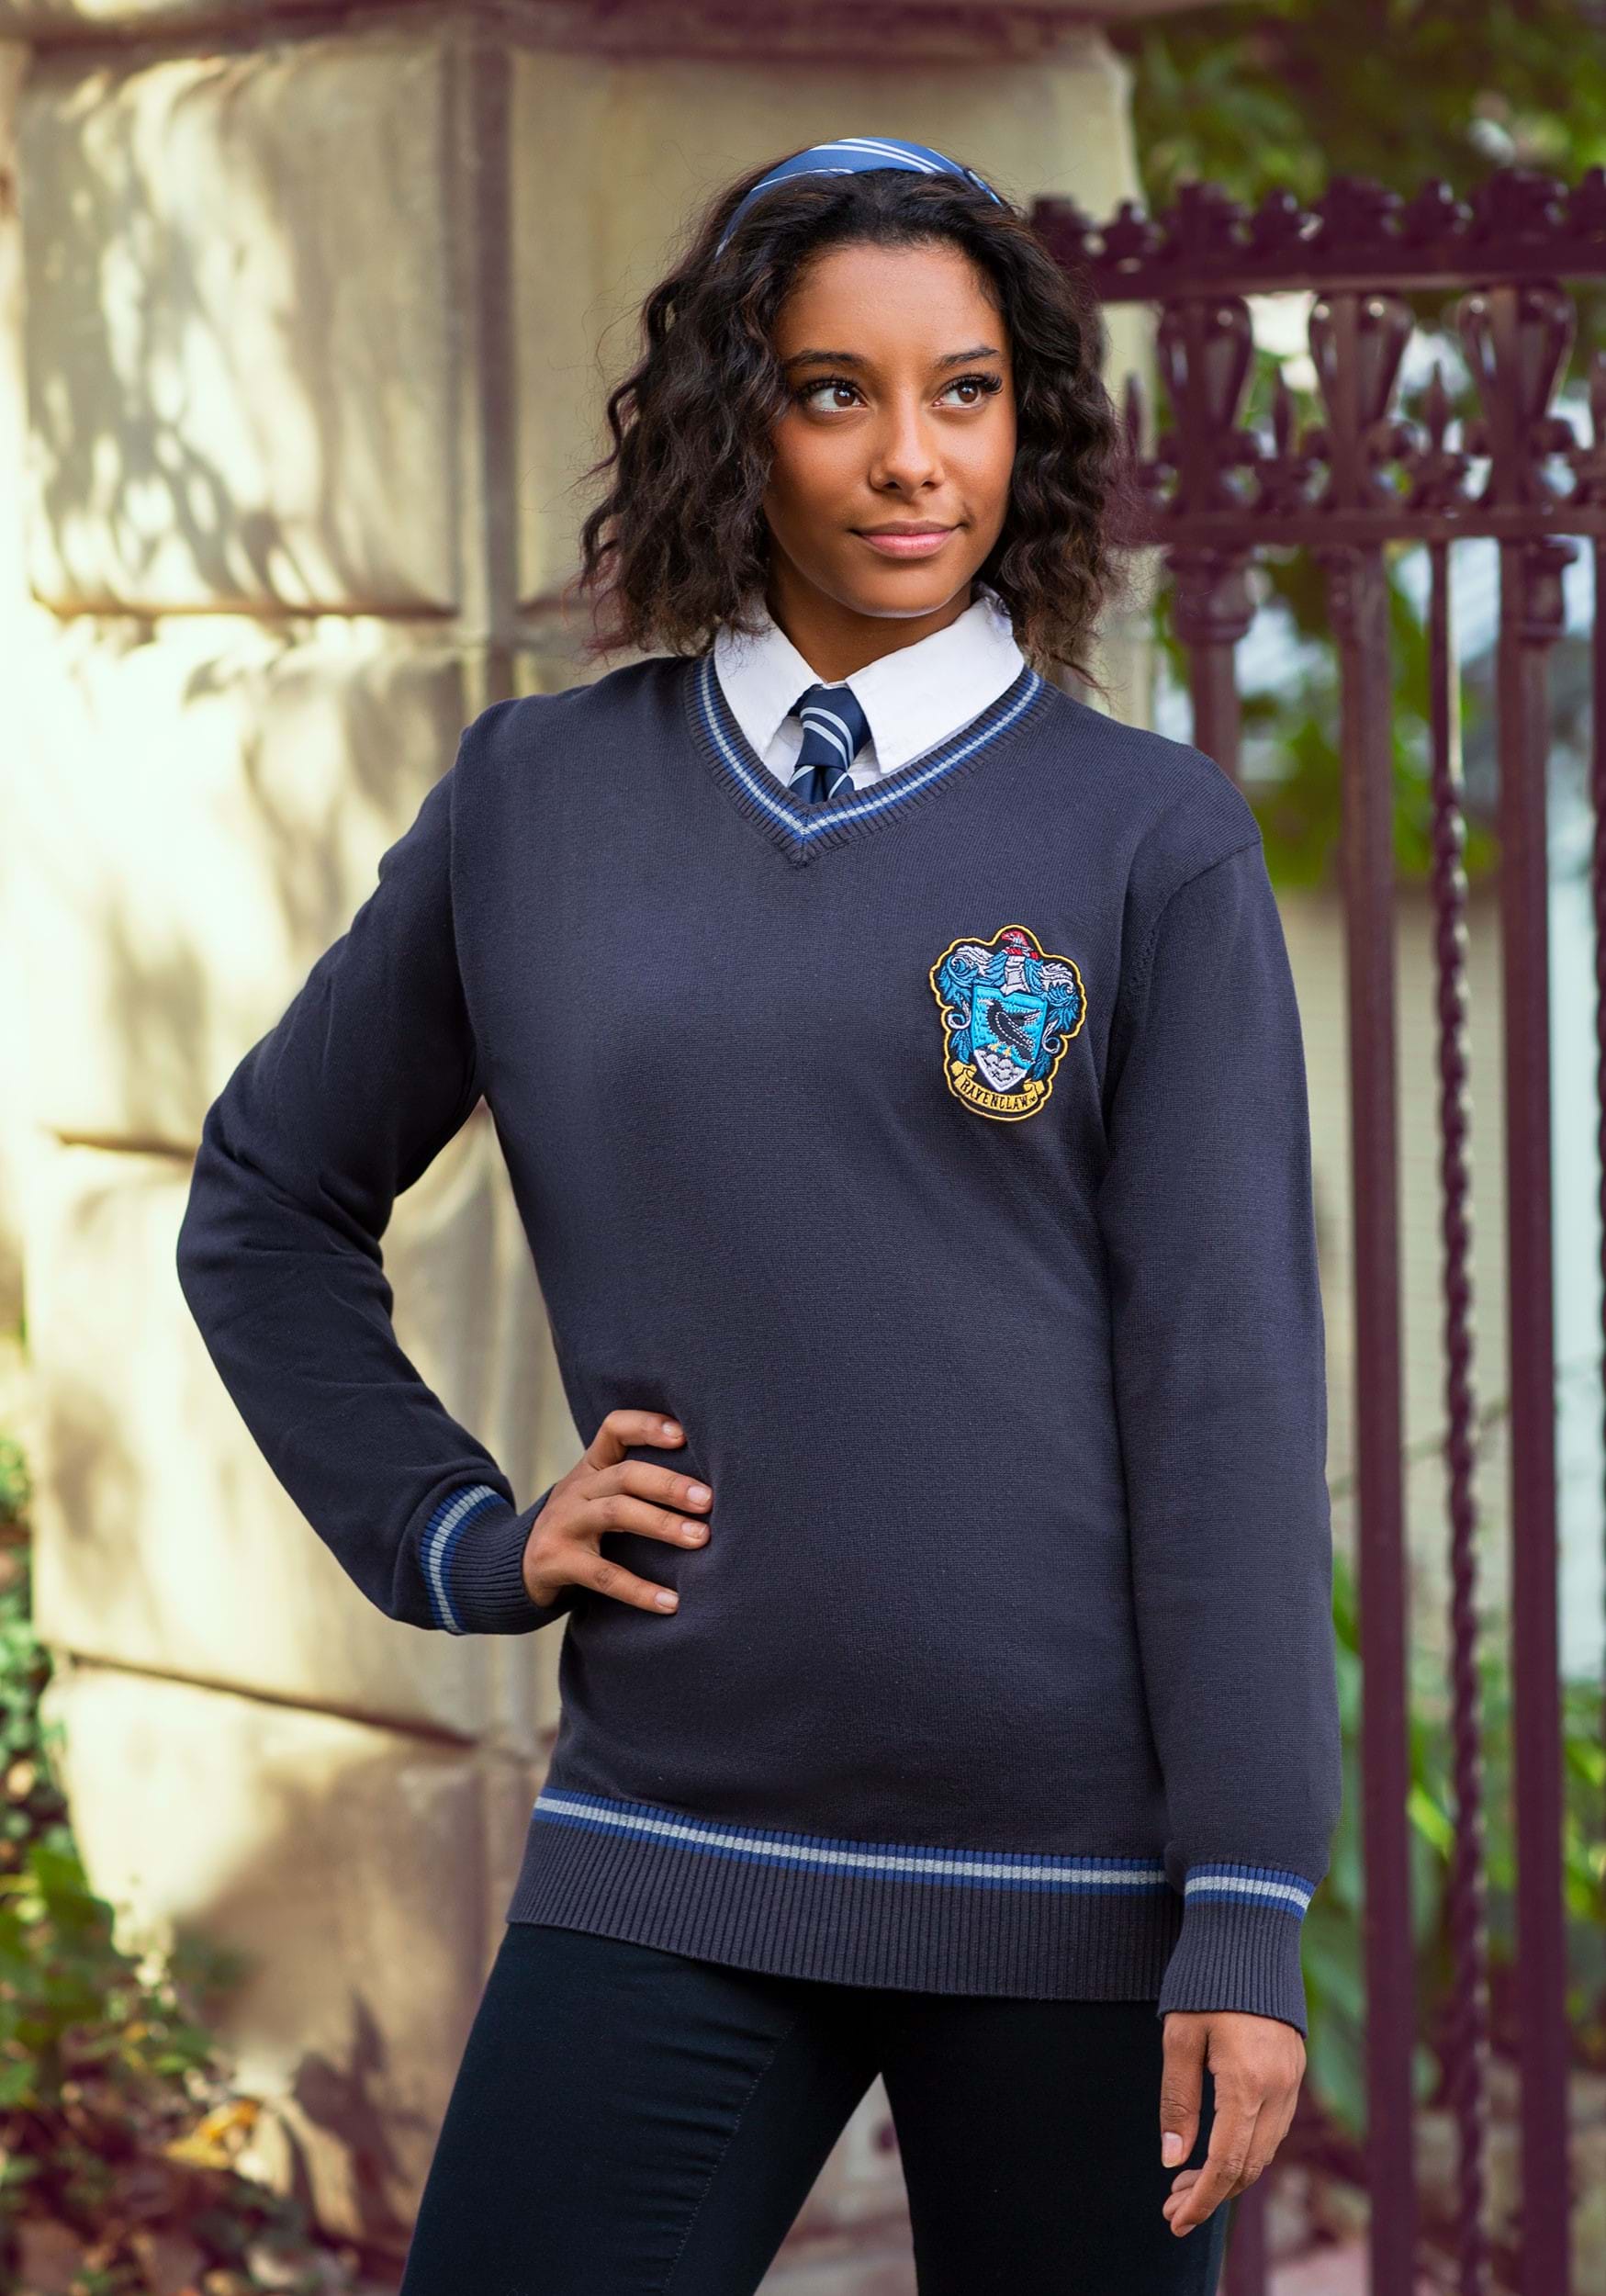  Danielle Nicole Harry Potter Ravenclaw Uniform Clutch